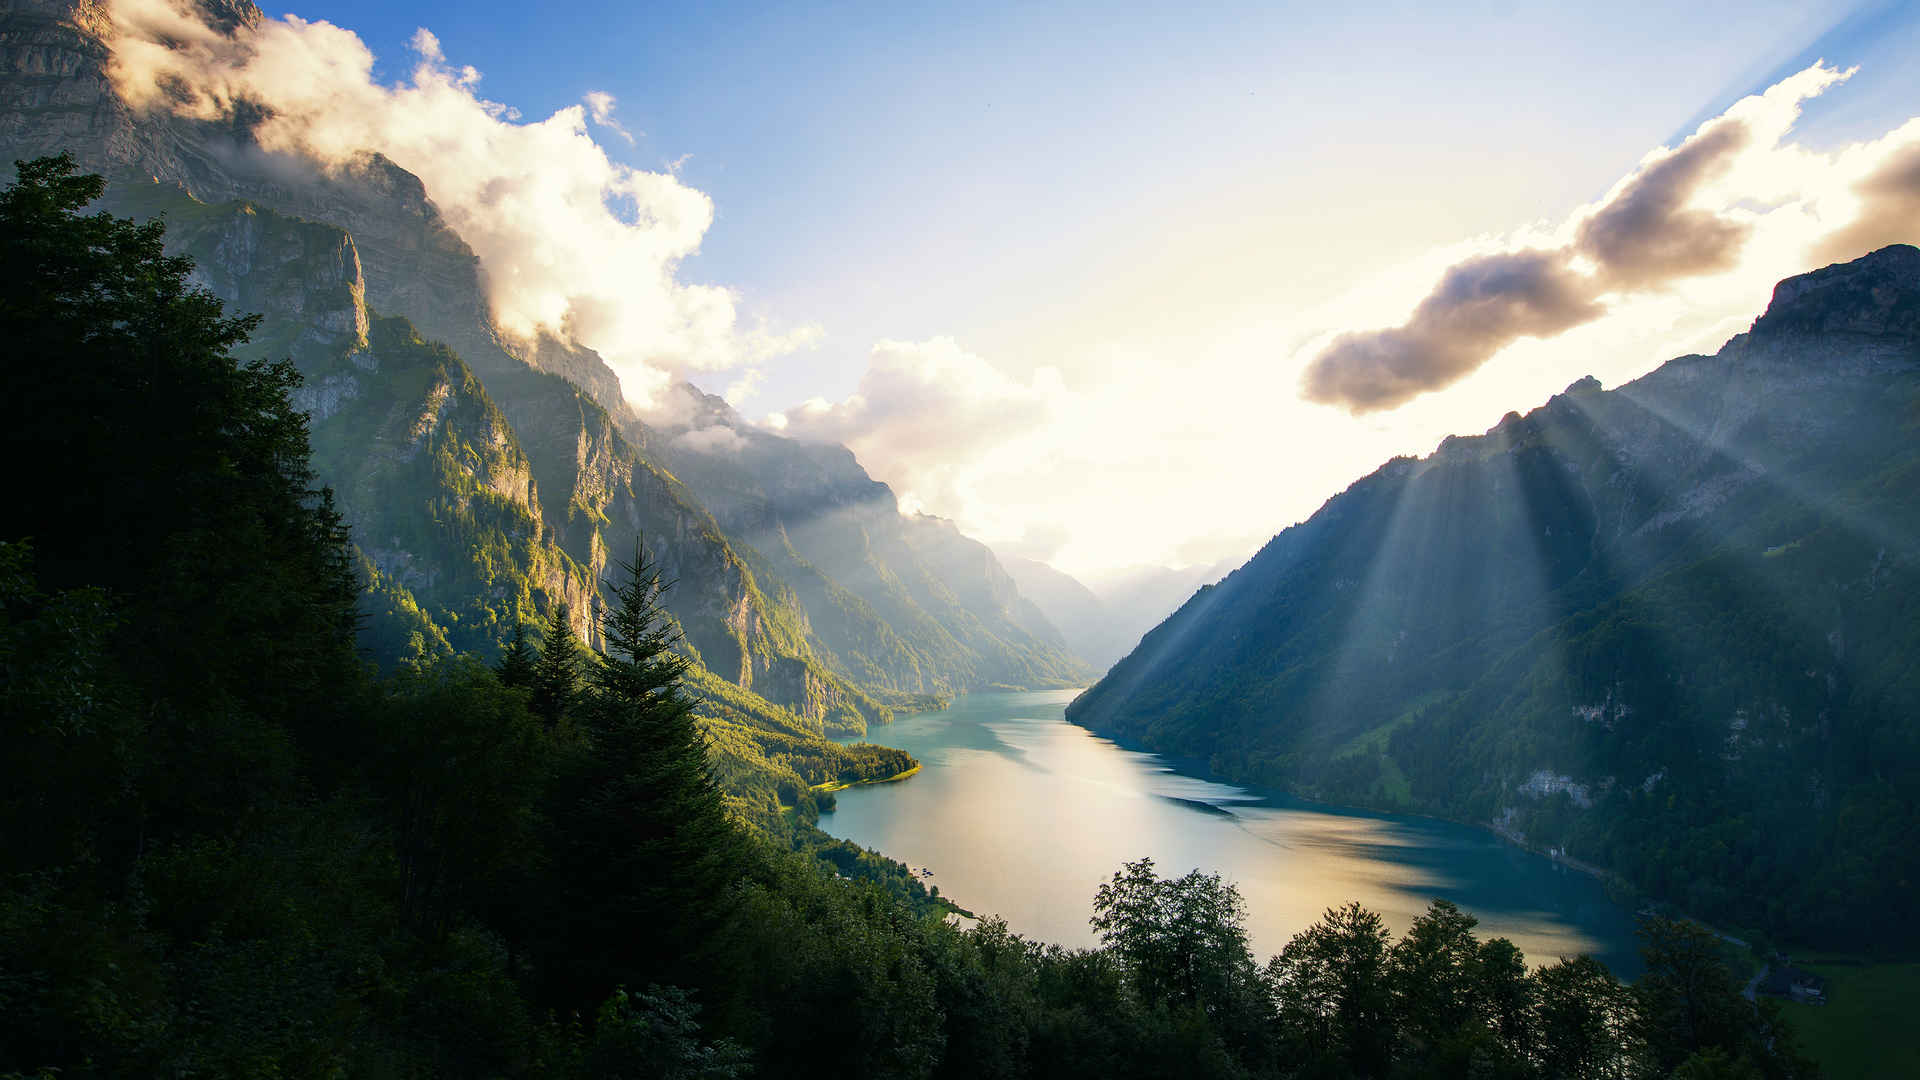 瑞士 天然湖泊 风景 壁纸图片